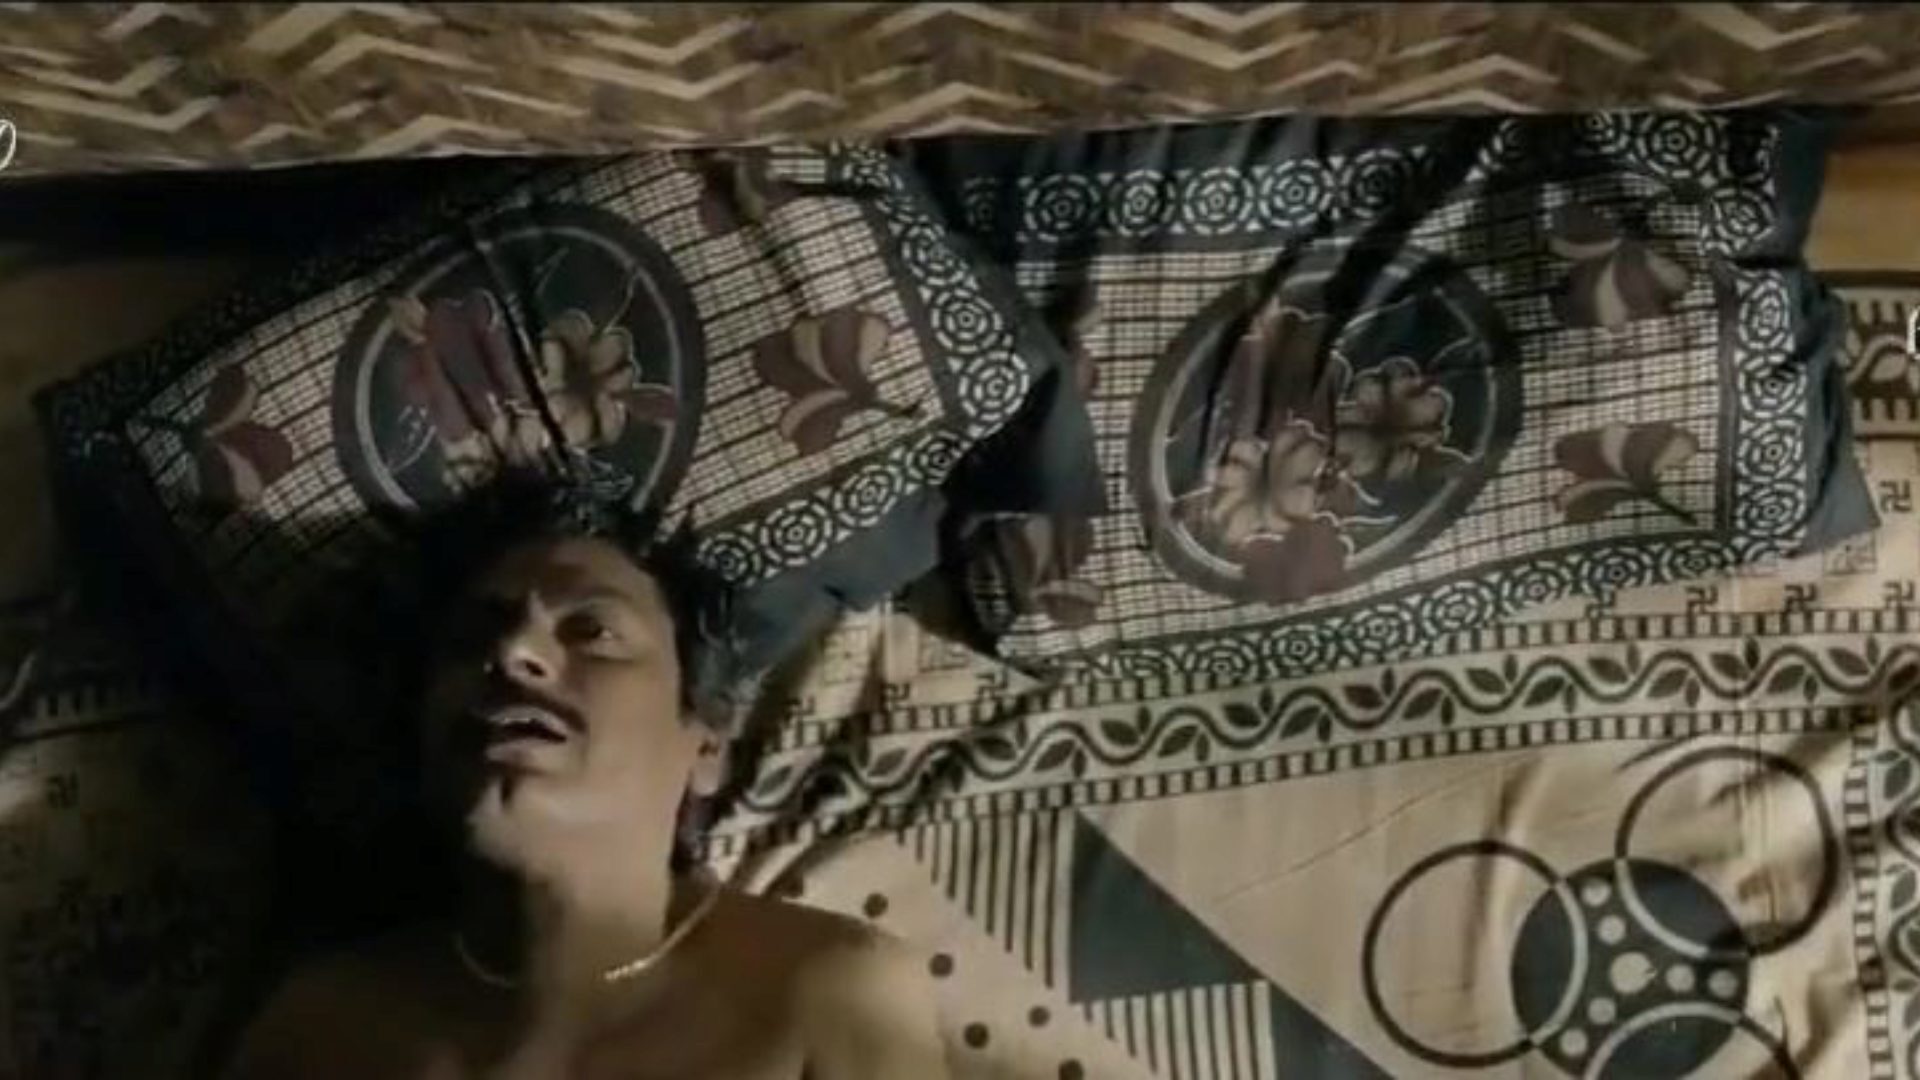 nawazuddin bollywood näyttelijä rajshri deshpande kubbra bidita onnekas bollywood näyttelijä nawazuddin vitun prostituoituja, transsukupuolisia ja näyttelijöitä kubbra, bidita, rajshri deshpande tissit suihin sperma hardcore anaali koira vittu